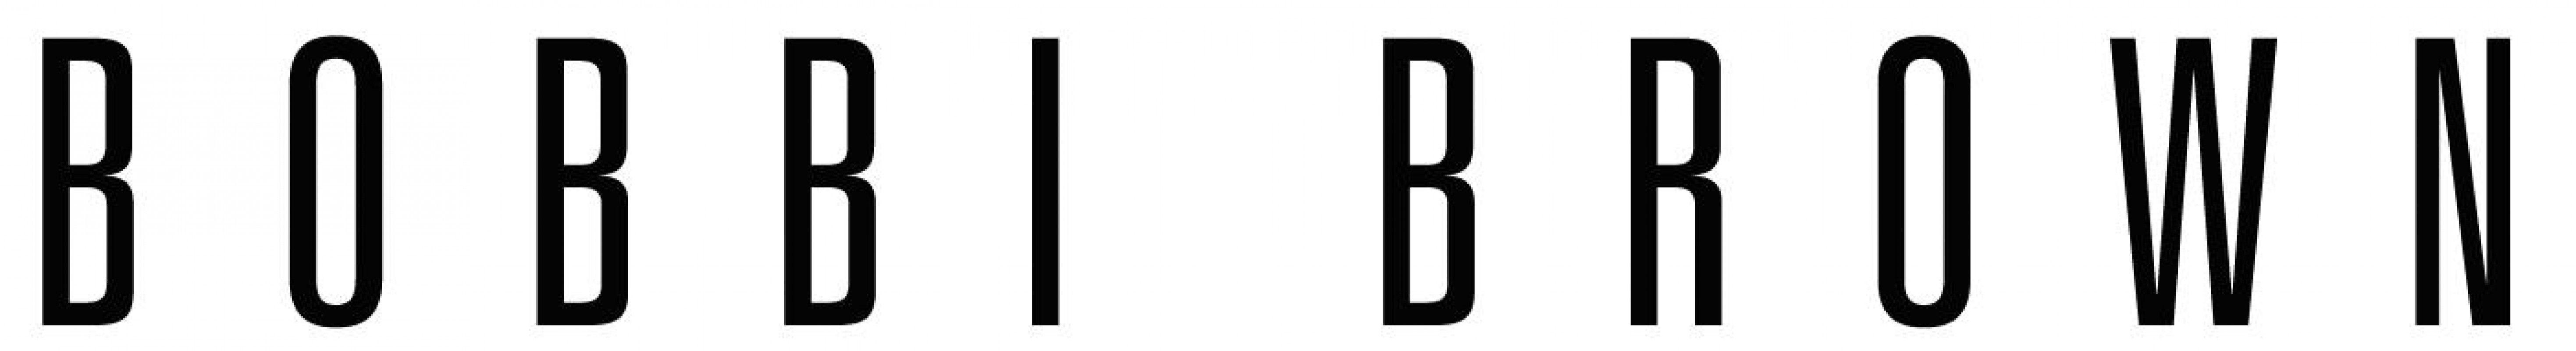 Bobbi Brown Cosmetics Logo - Bobbi brown Logos